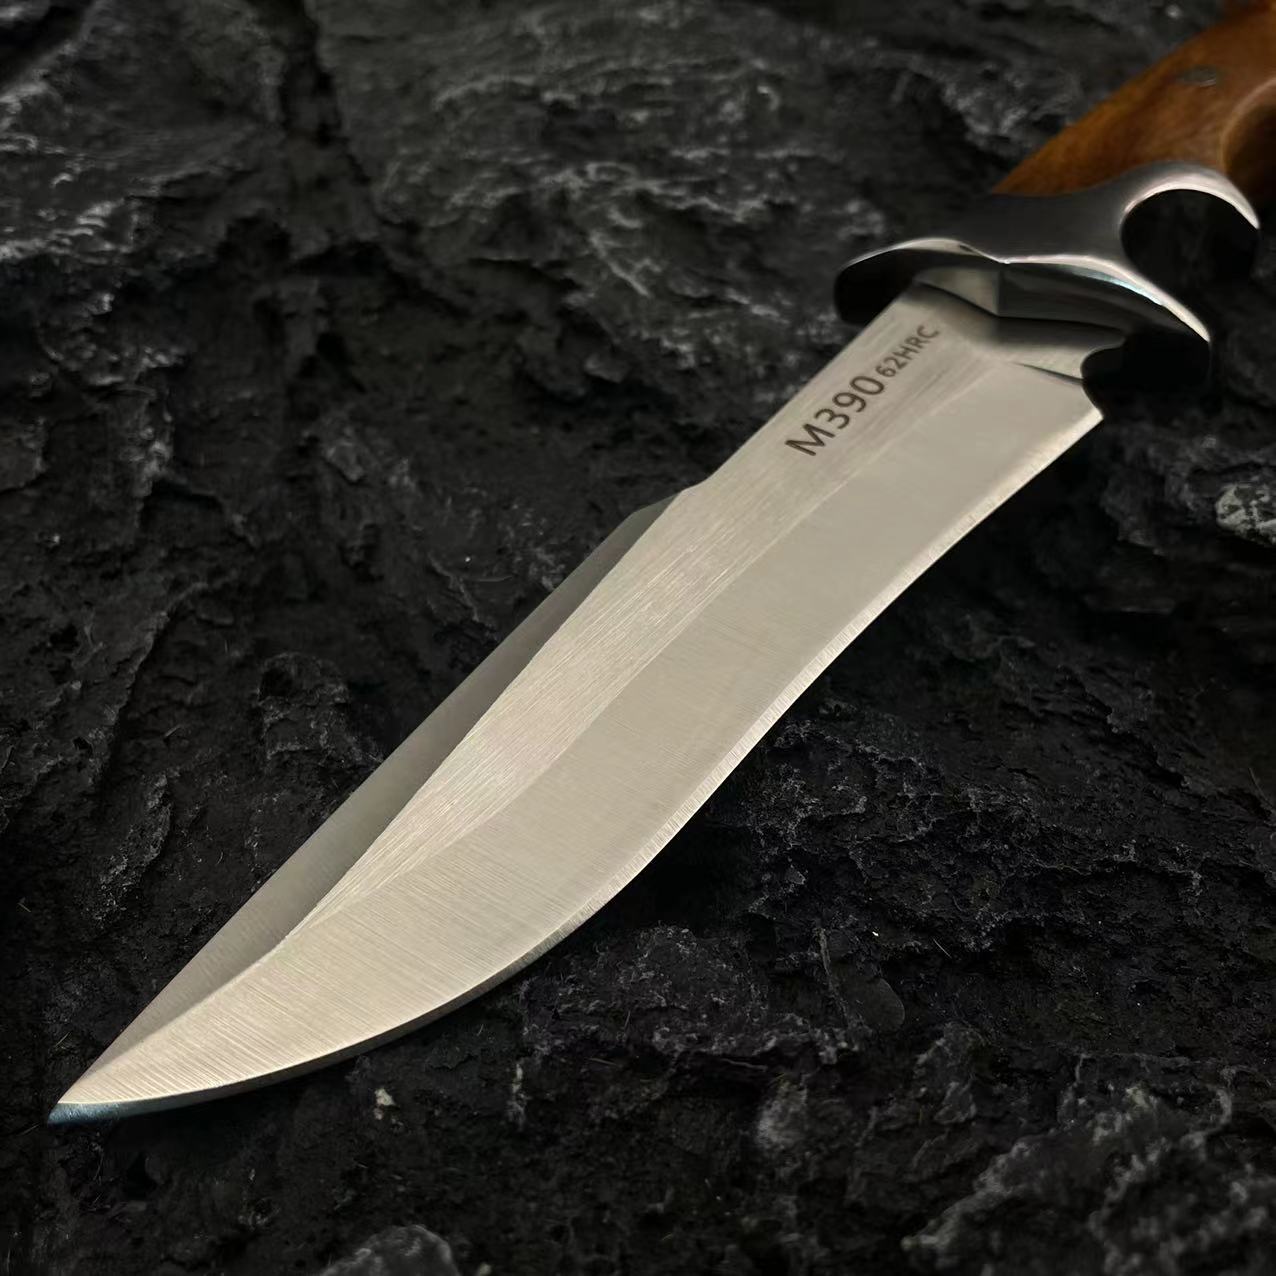 高品質のストレートナイフ固定刃ナイフD2スチールサテンブレード木製+スチールハンドル屋外サバイバルストレートハンティングナイフリースシース